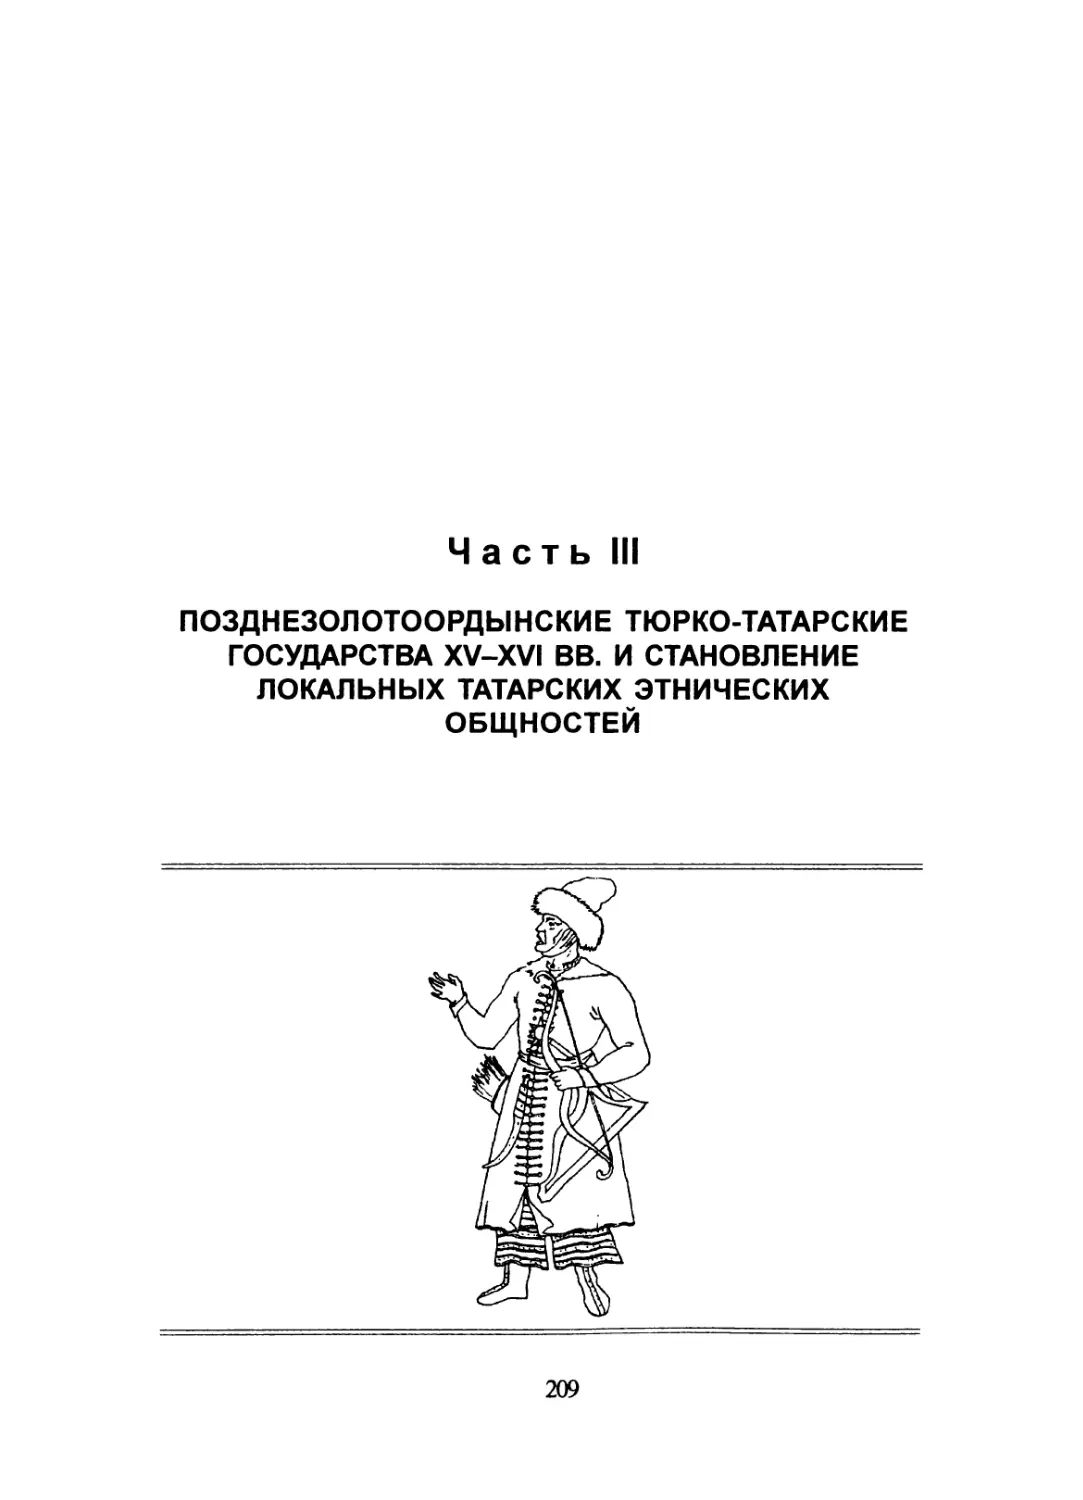 Часть III. Позднезолотоордынские тюрко-татарские государства XV-XVI вв. и становление локальных татарских этнических общностей